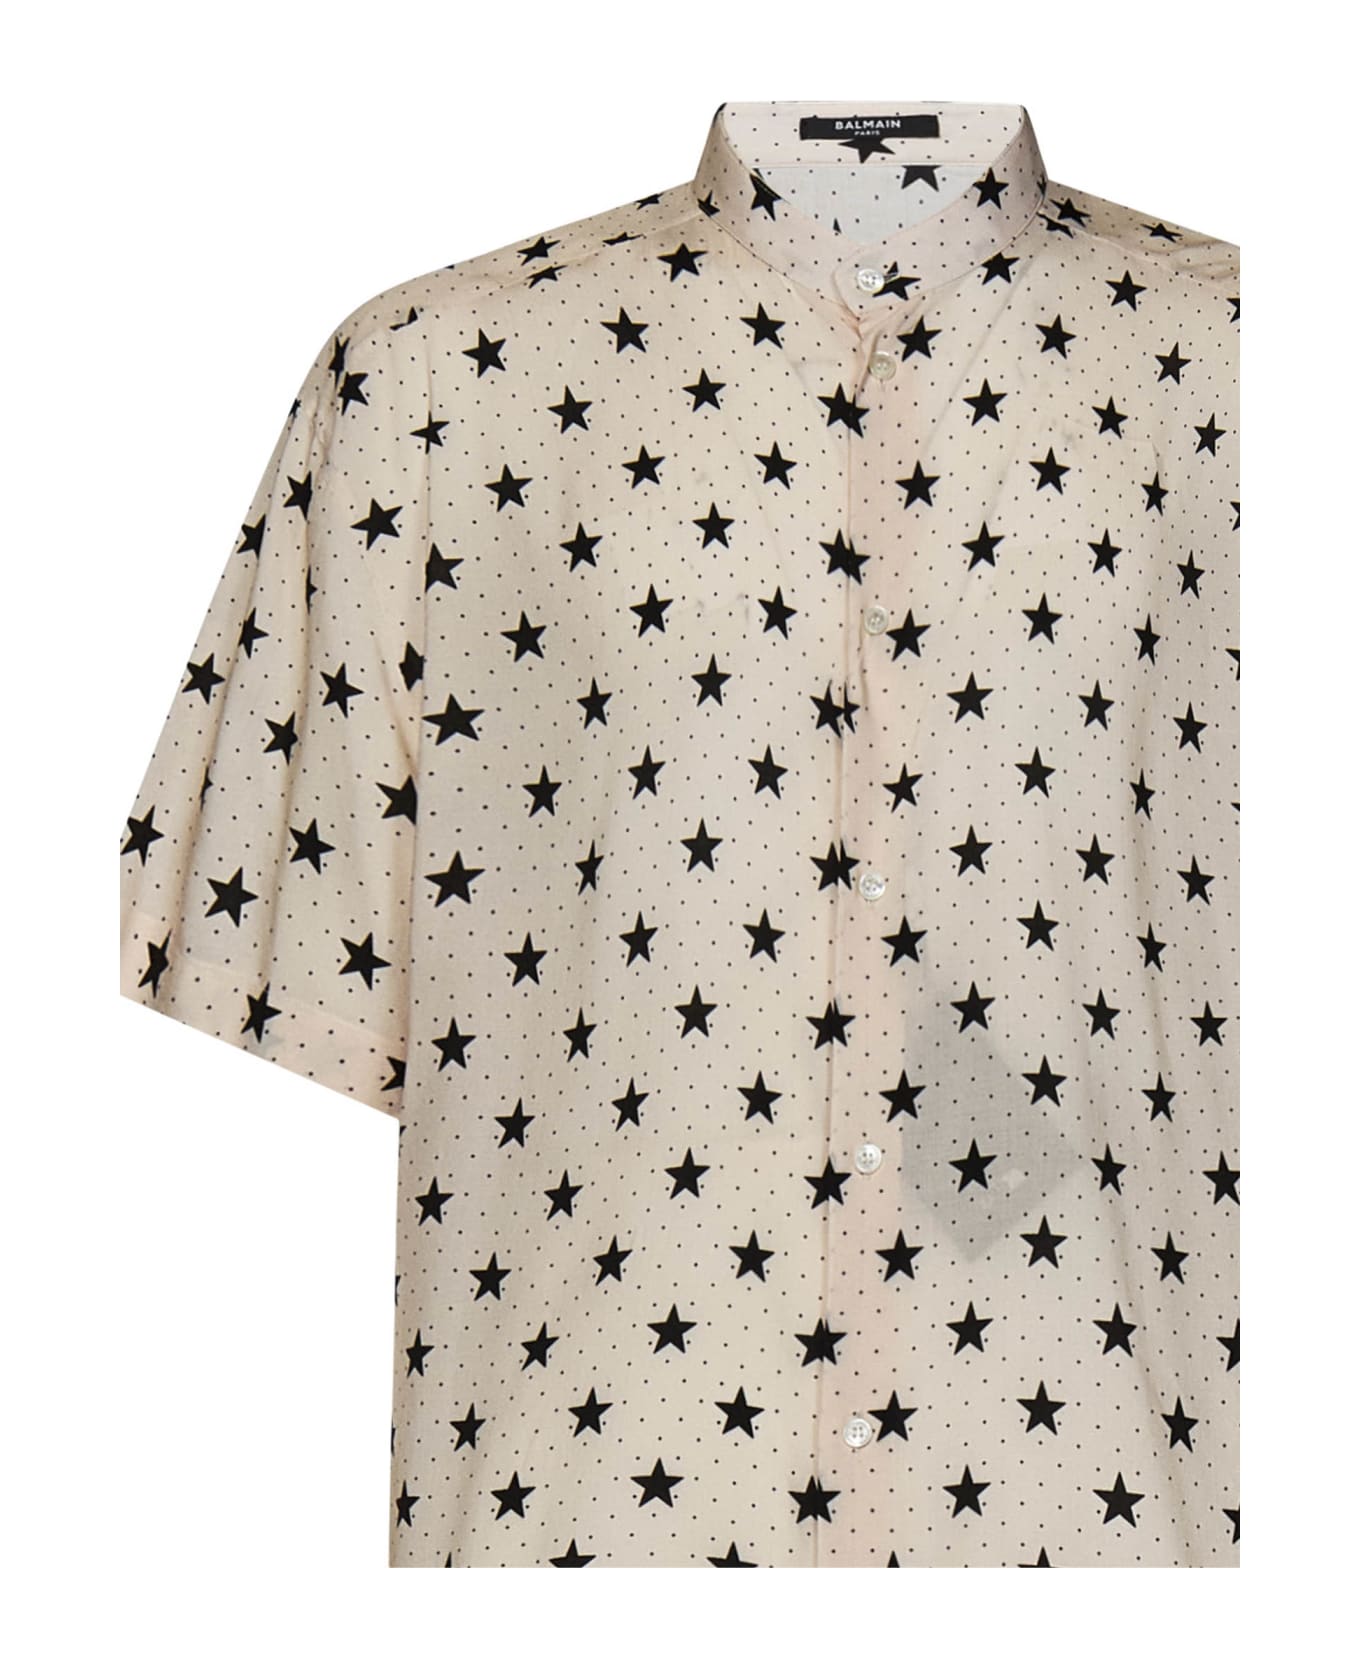 Balmain Star Print Shirt - AVORIO NERO シャツ